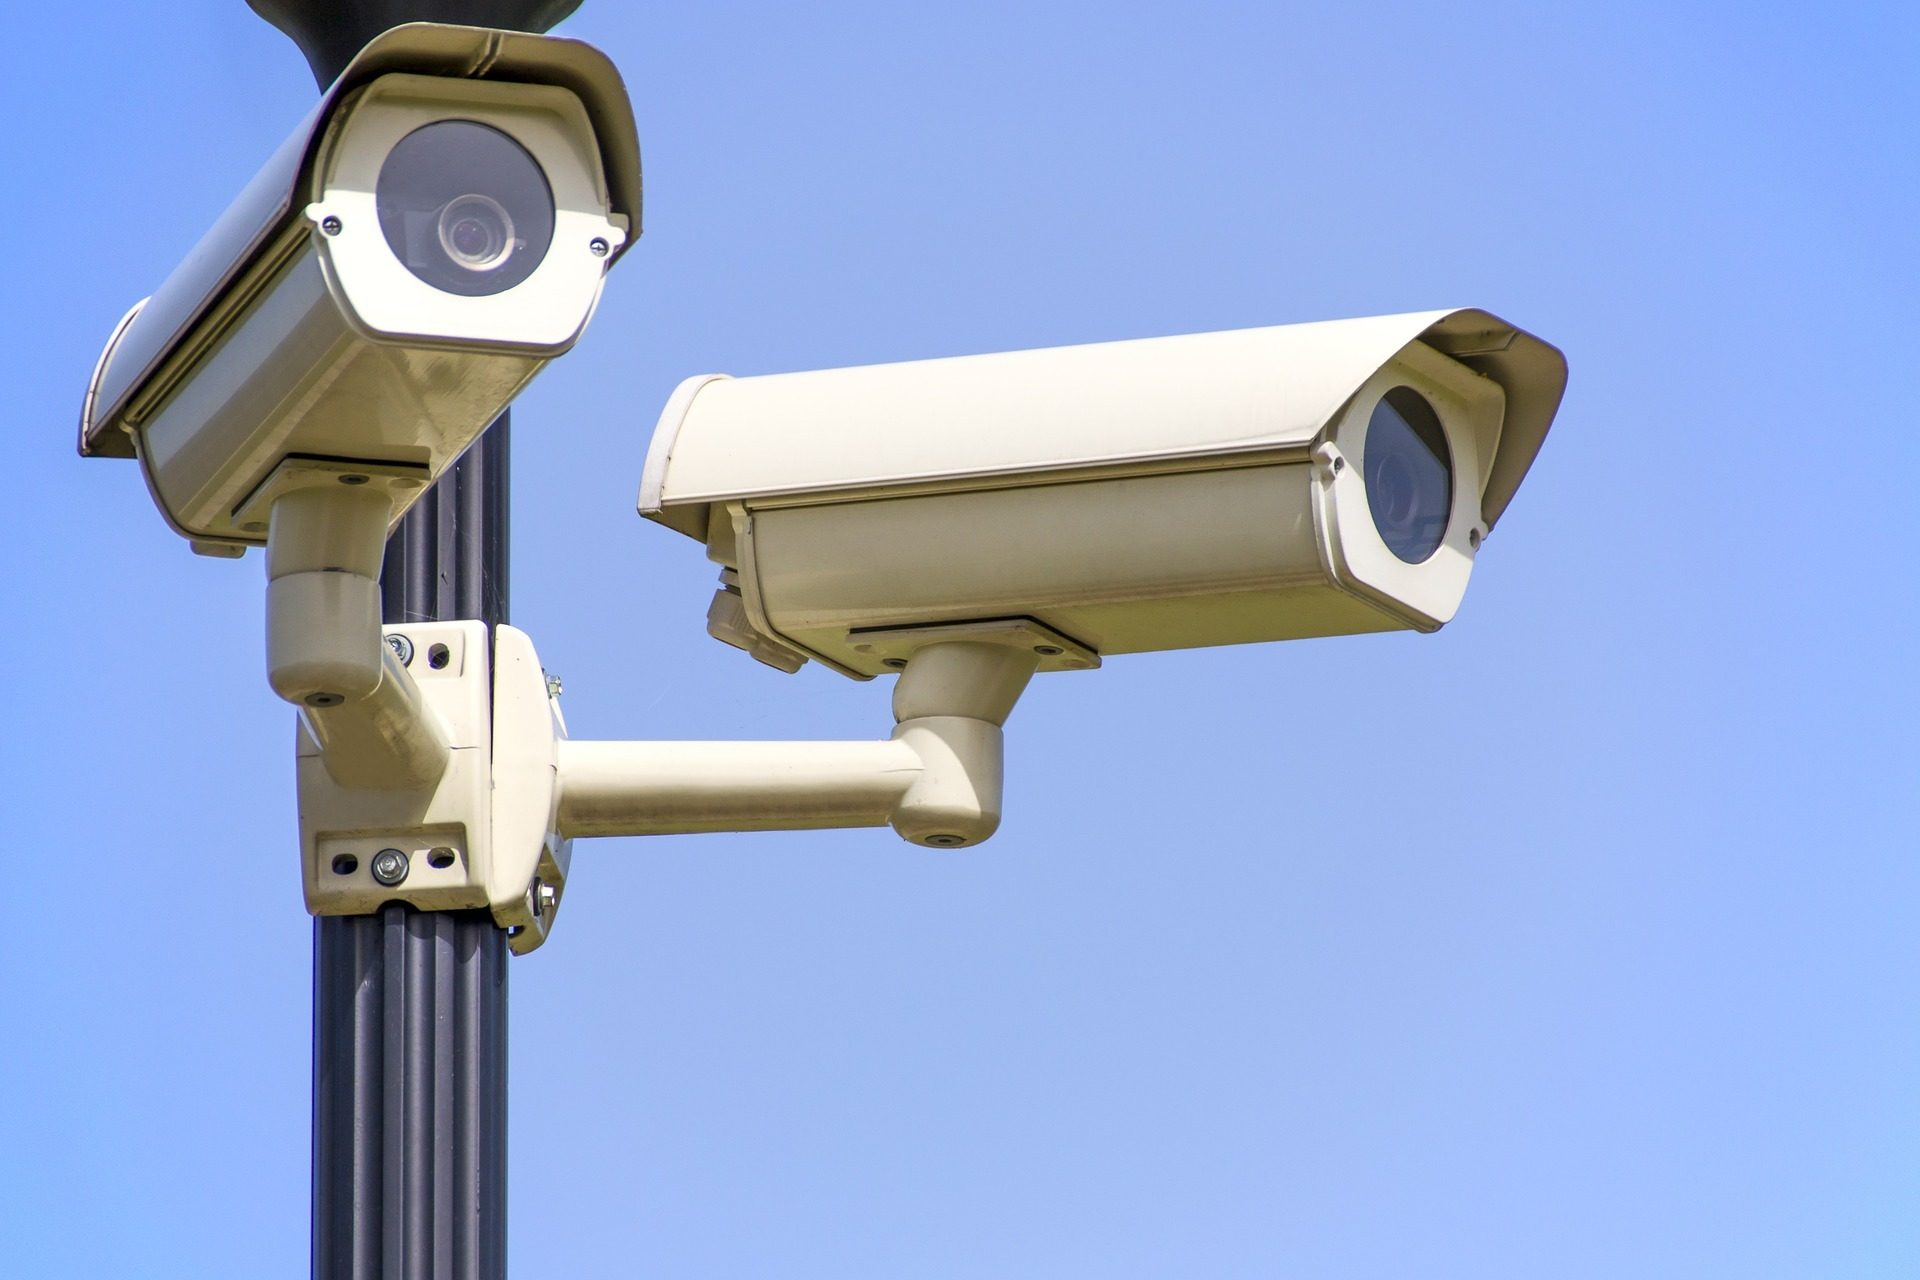 Surveillance camera, Home security, Sky